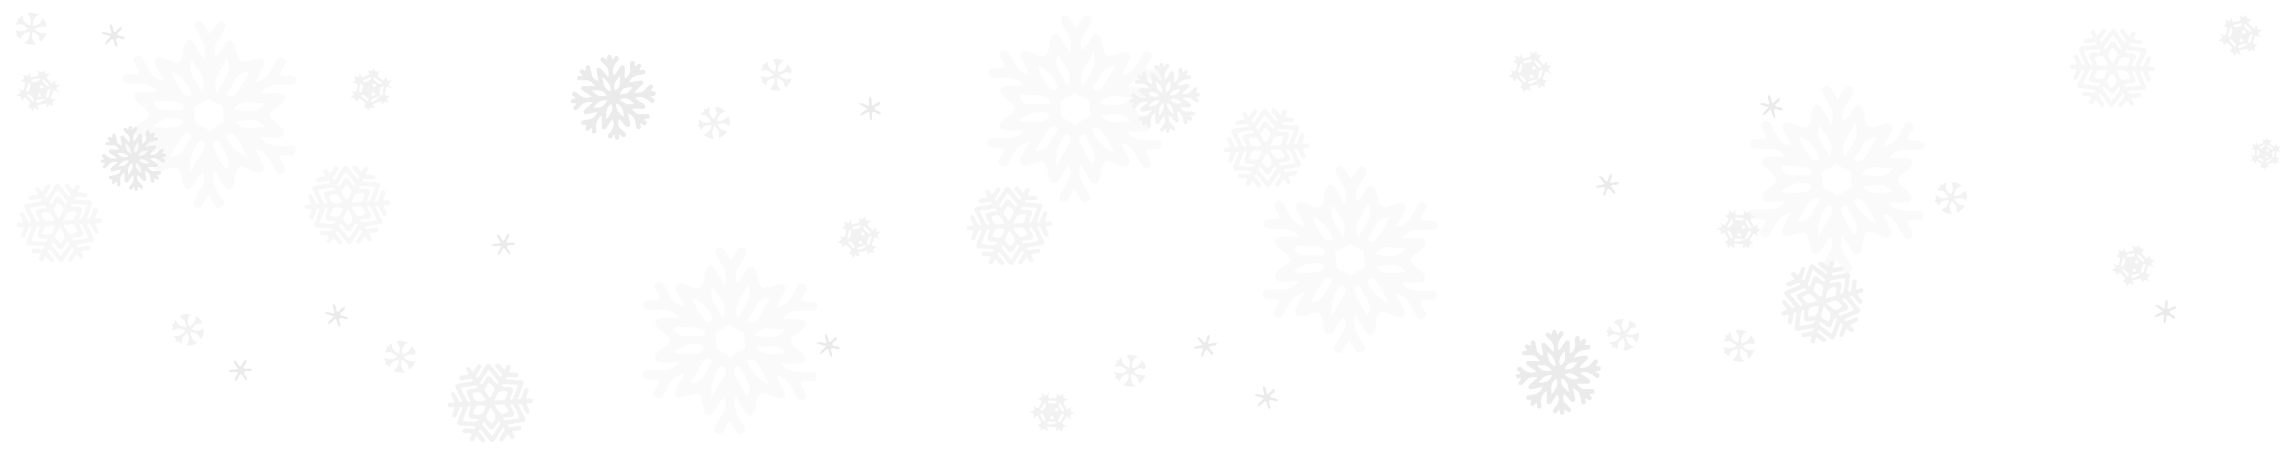 Grey snowflakes on a white background